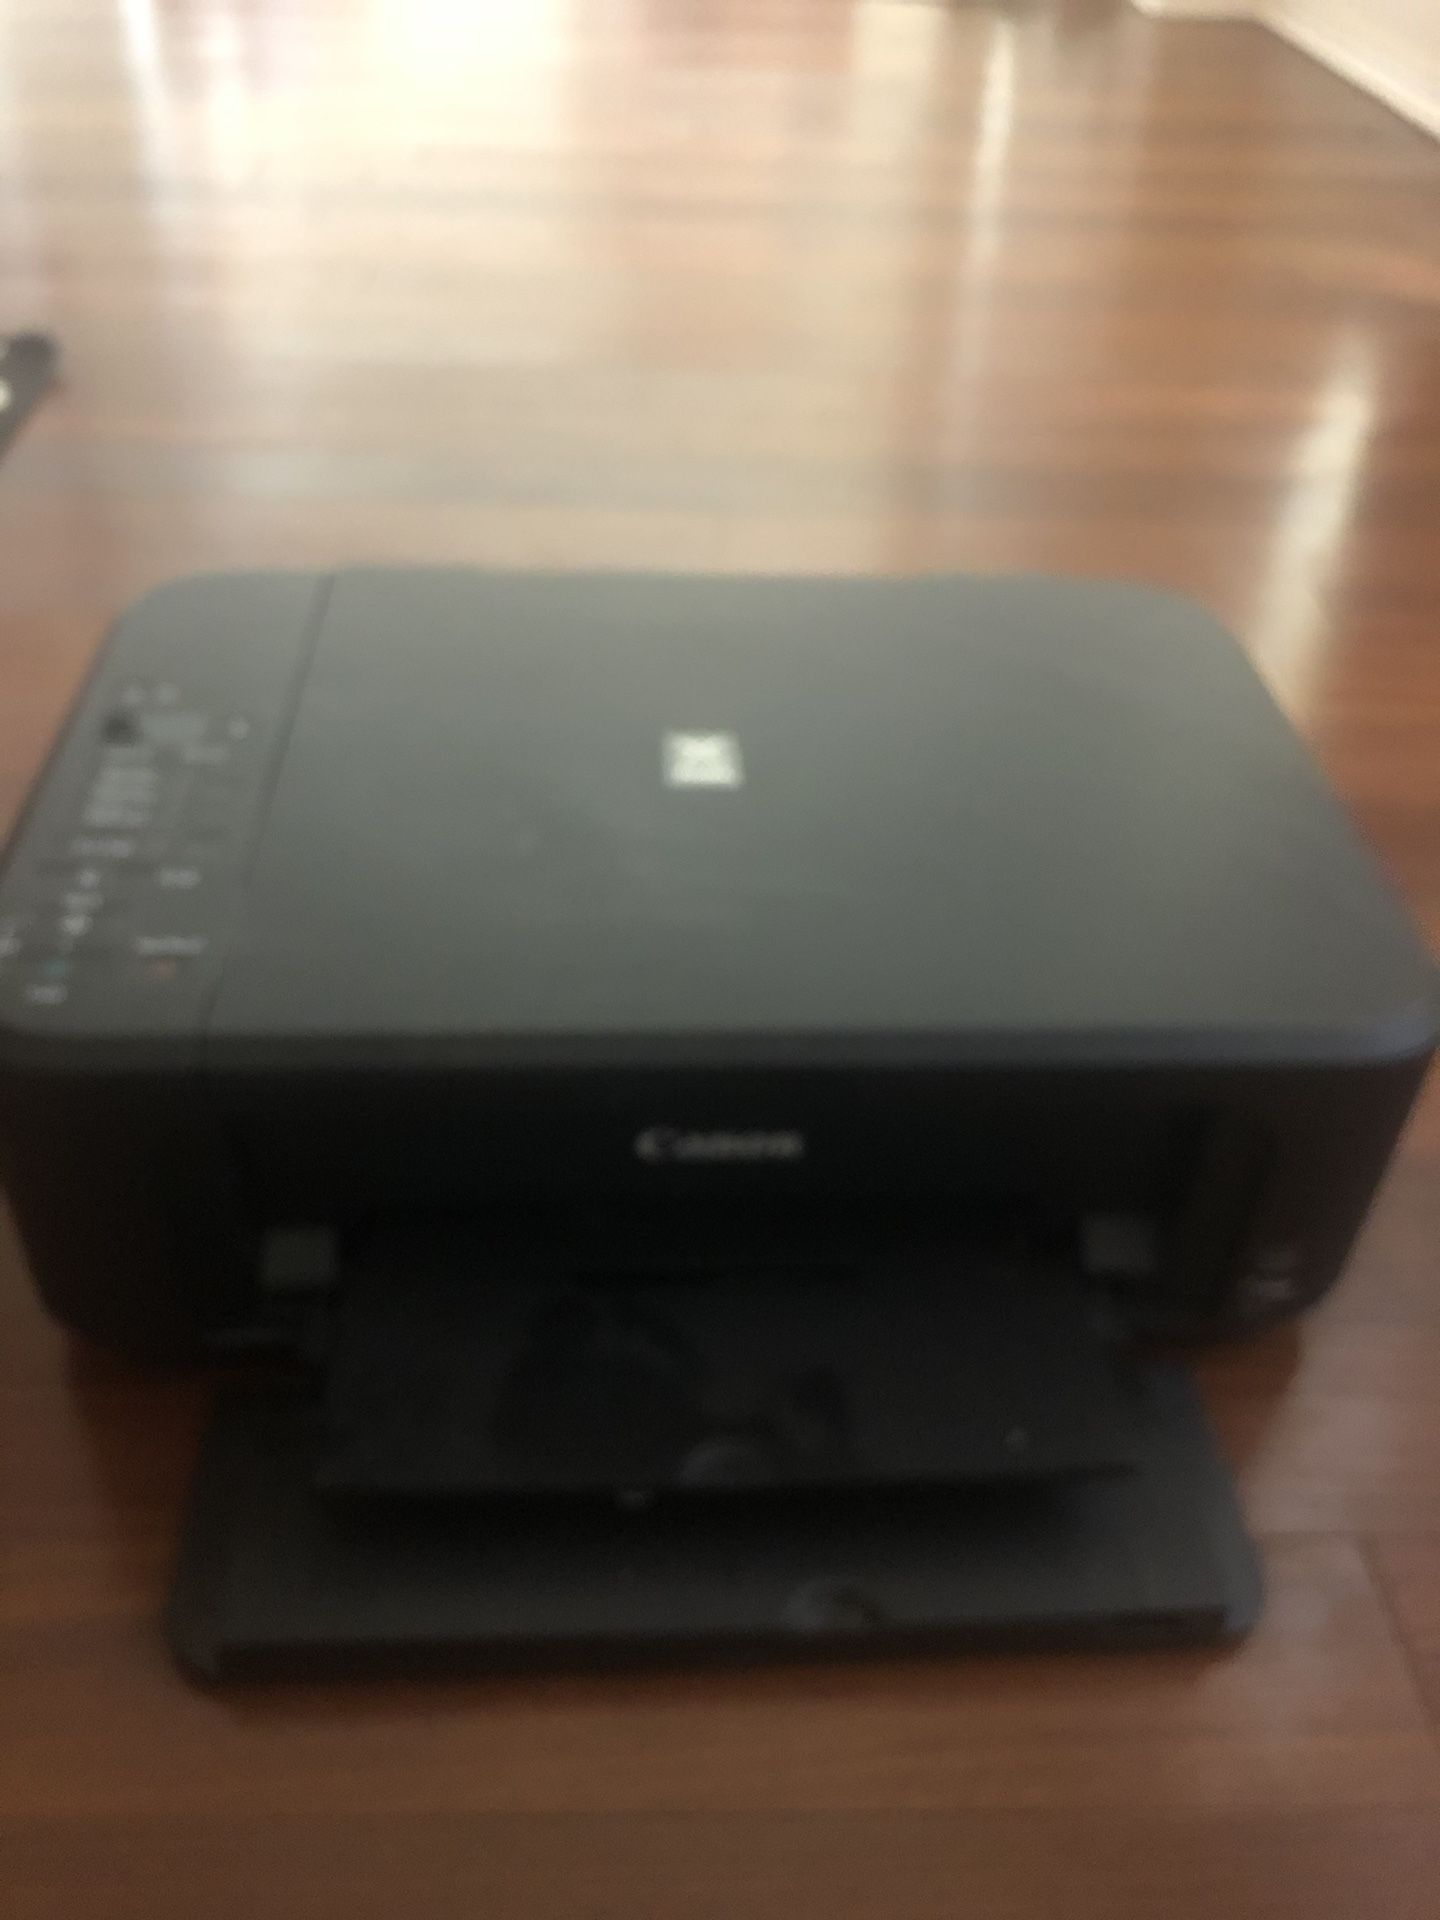 Free Canon Printer ( pixma - working condition )